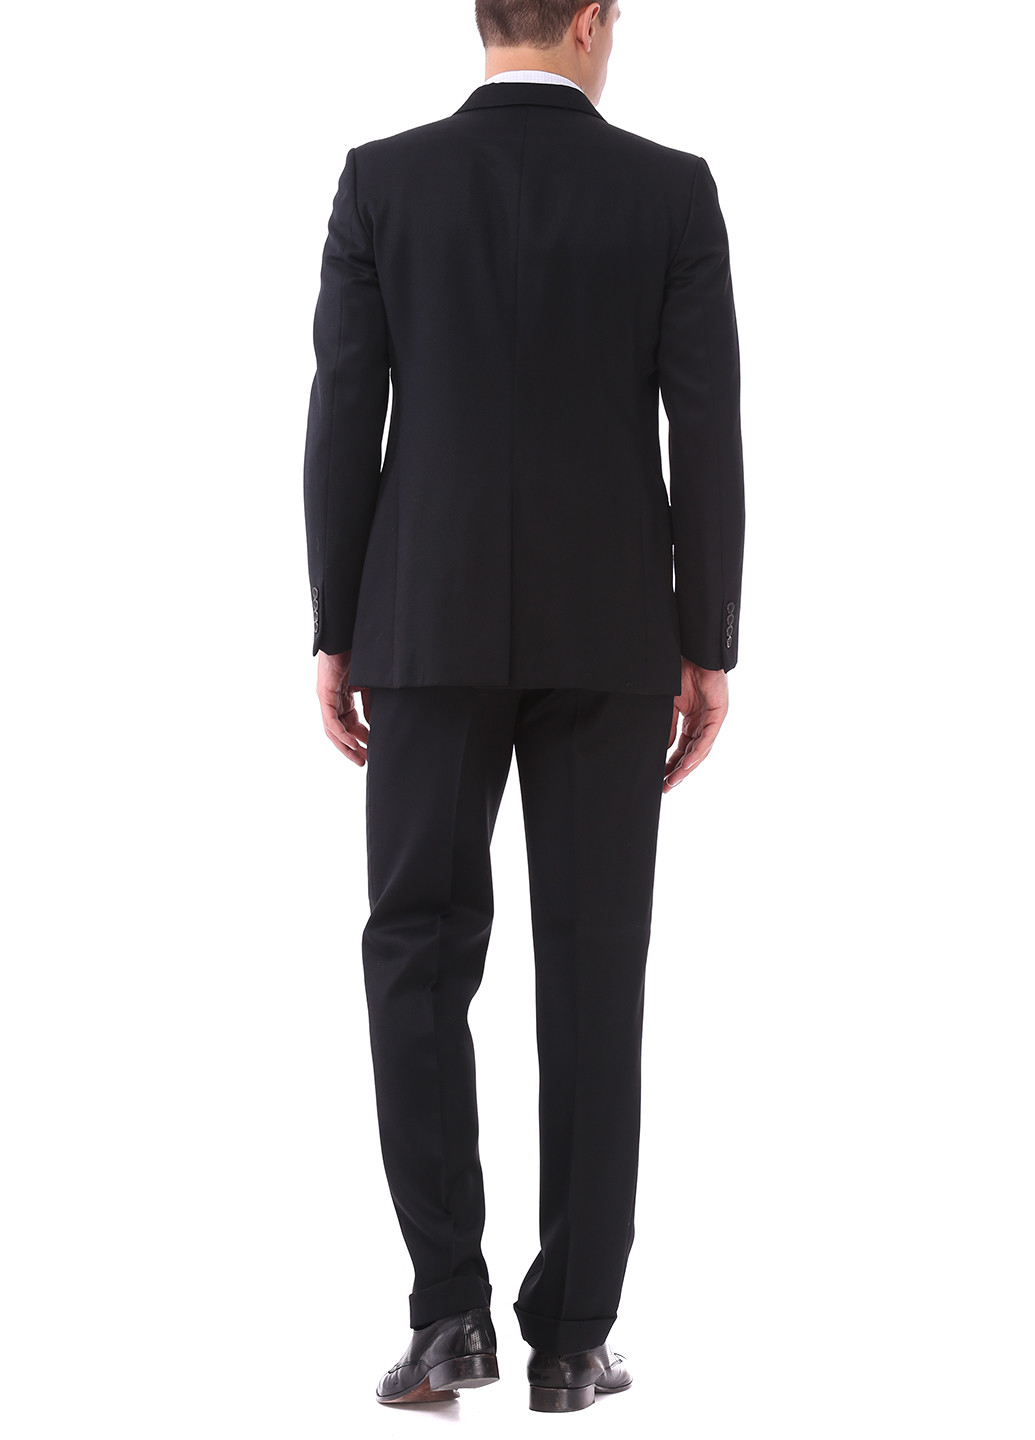 Чорний демісезонний костюм (пиджак, брюки) брючний Bocodo